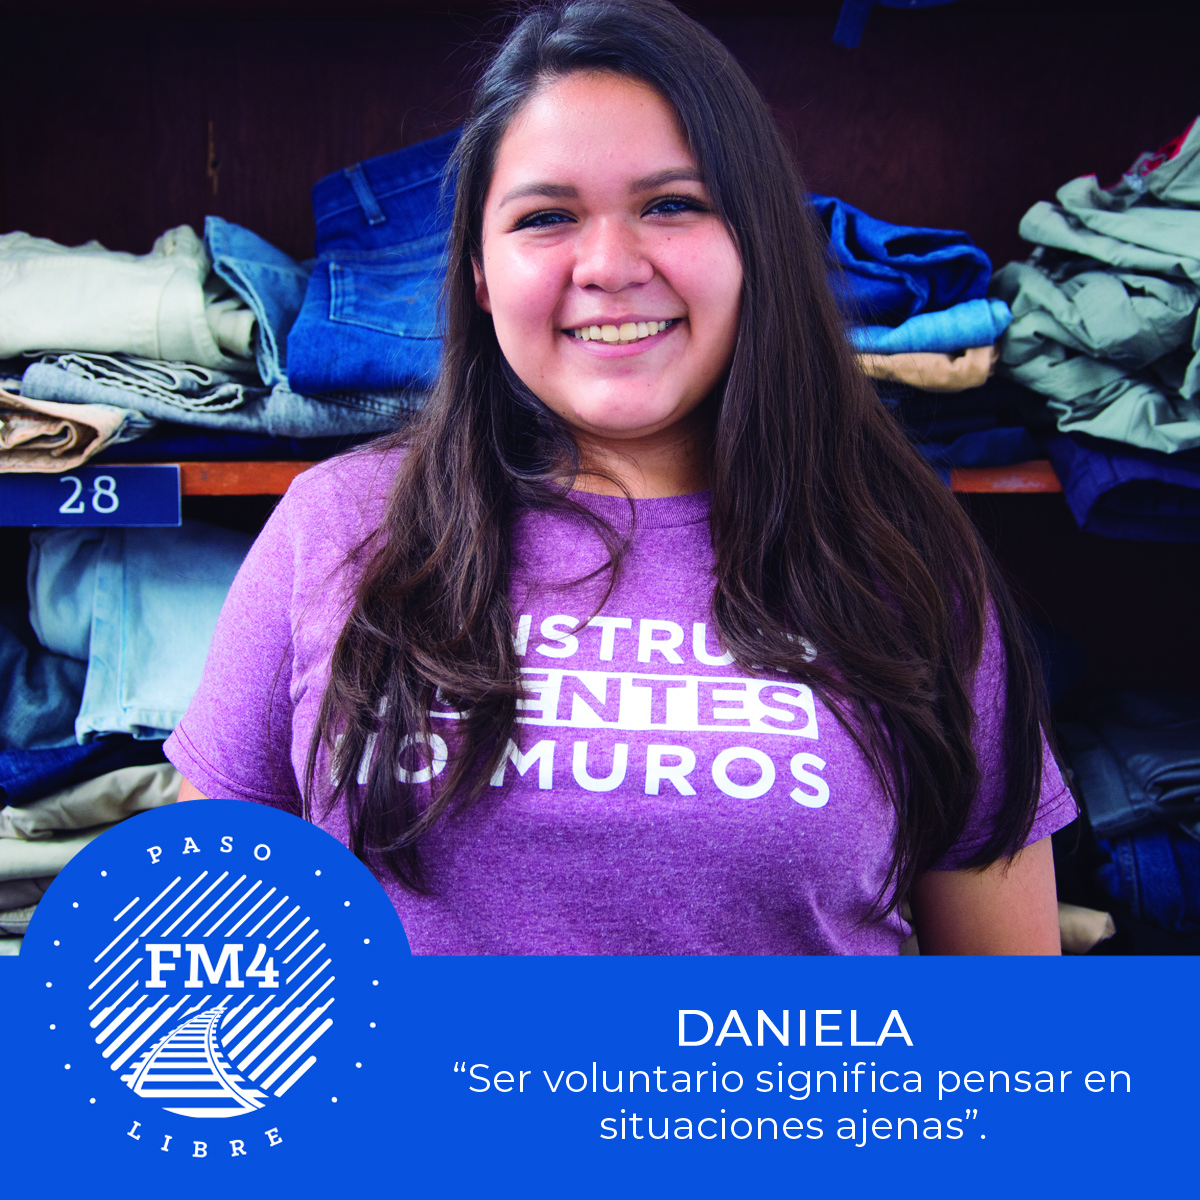 ¿Y a ti qué te motiva para hacer voluntariado?  🤝🌎
#HazVoluntariado
#SoyFM4
#SéParteDeFM4